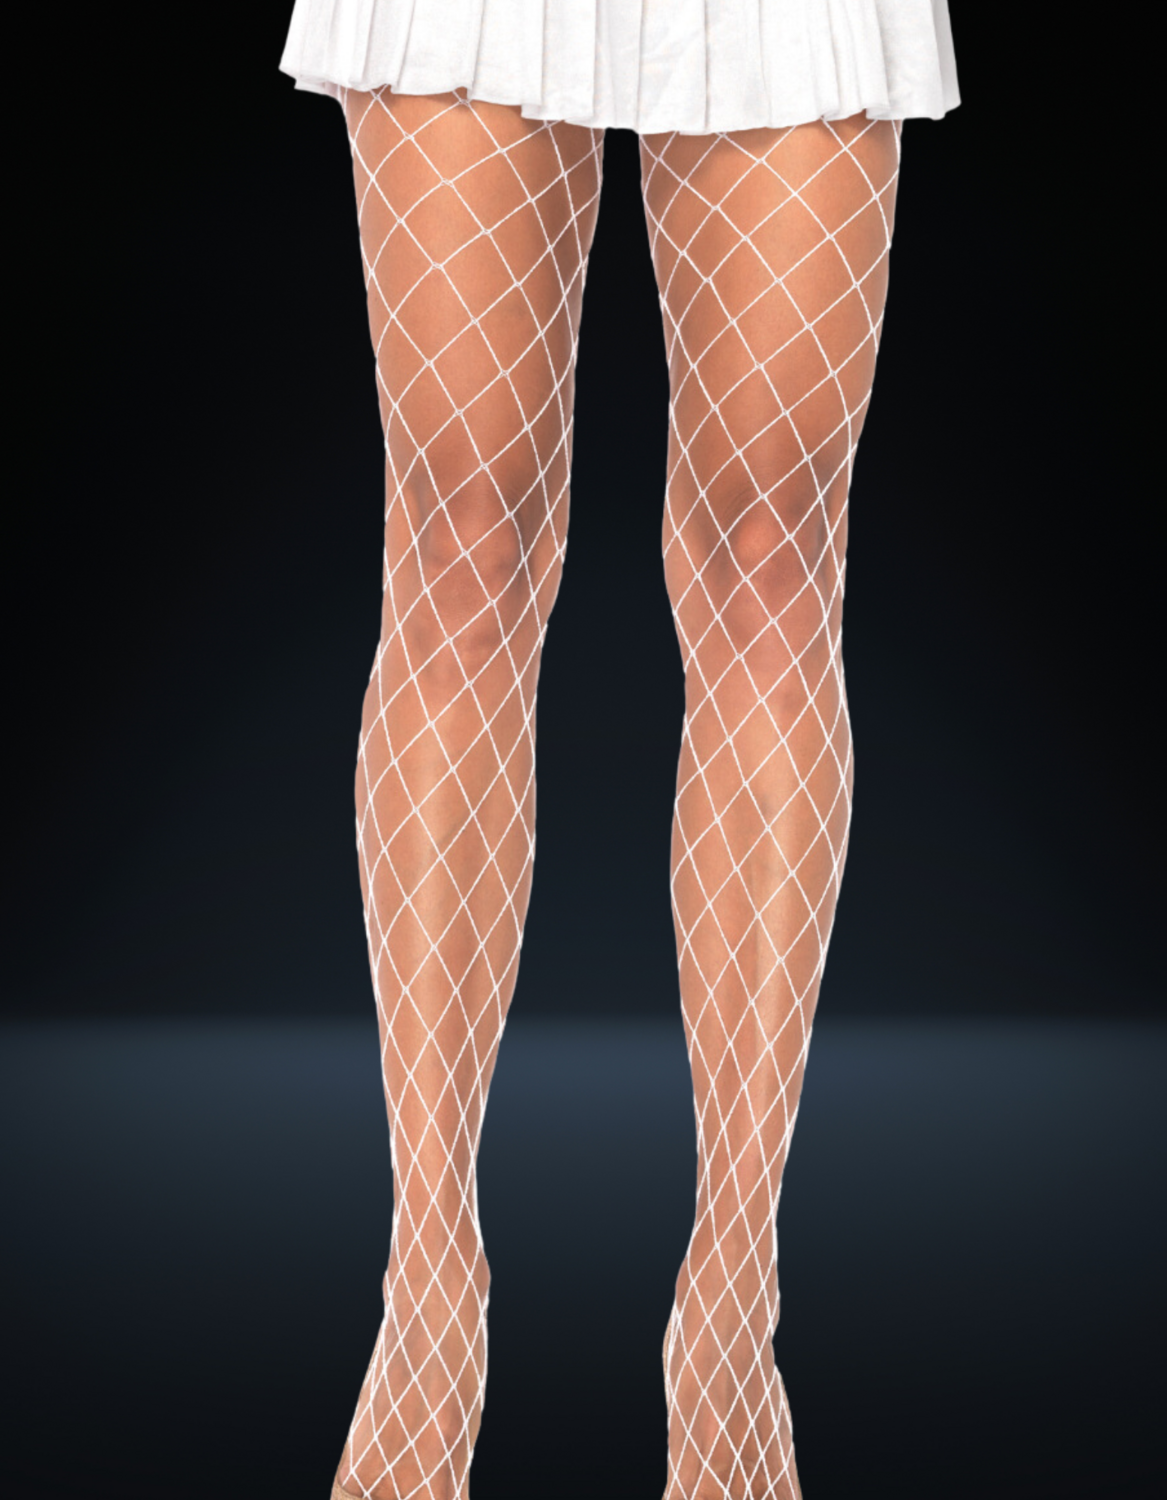 Spandex Diamond Panty Hose, Size: one-size, Color: Black